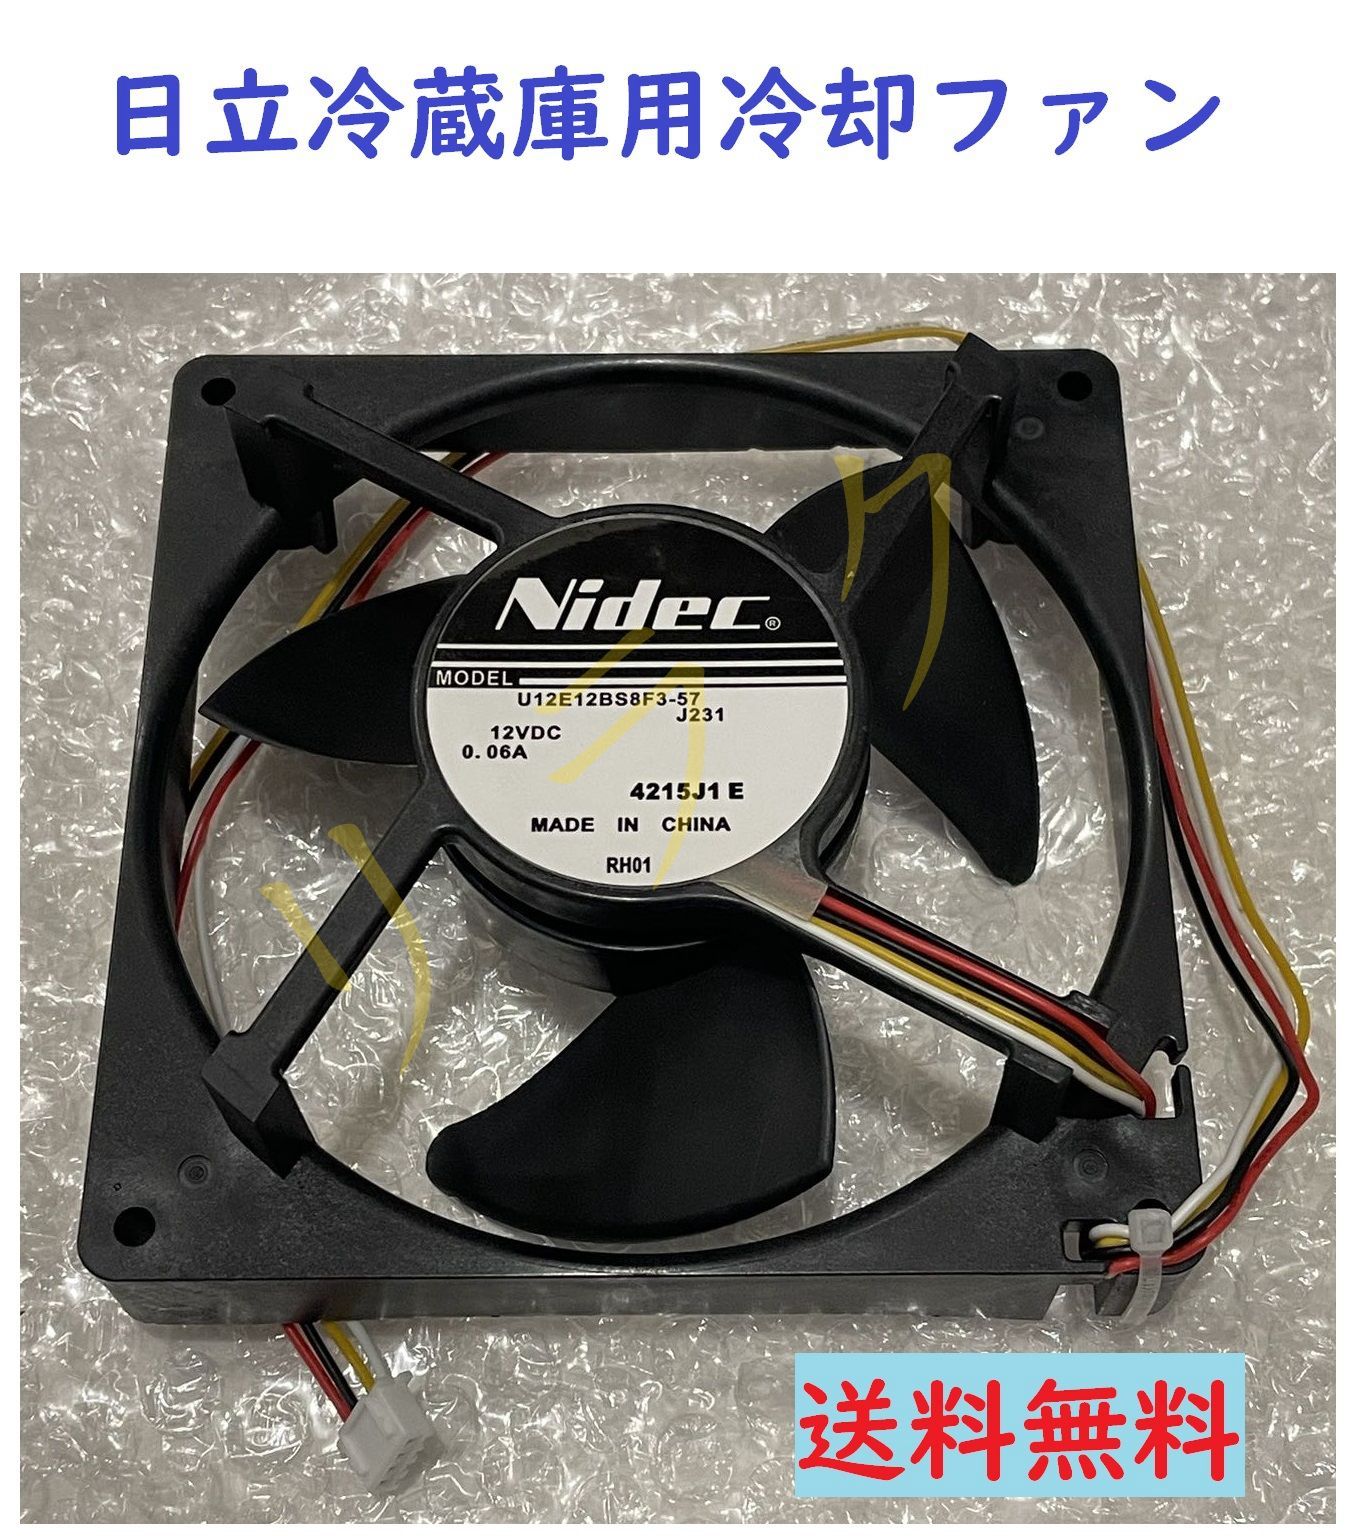 送料無料 NIDEC U12E12BS8F3-57 J231 12VDC 0.06A 日立 HITACHI 冷蔵庫用 冷却ファン  「鍵」マークが13回点滅 修理用